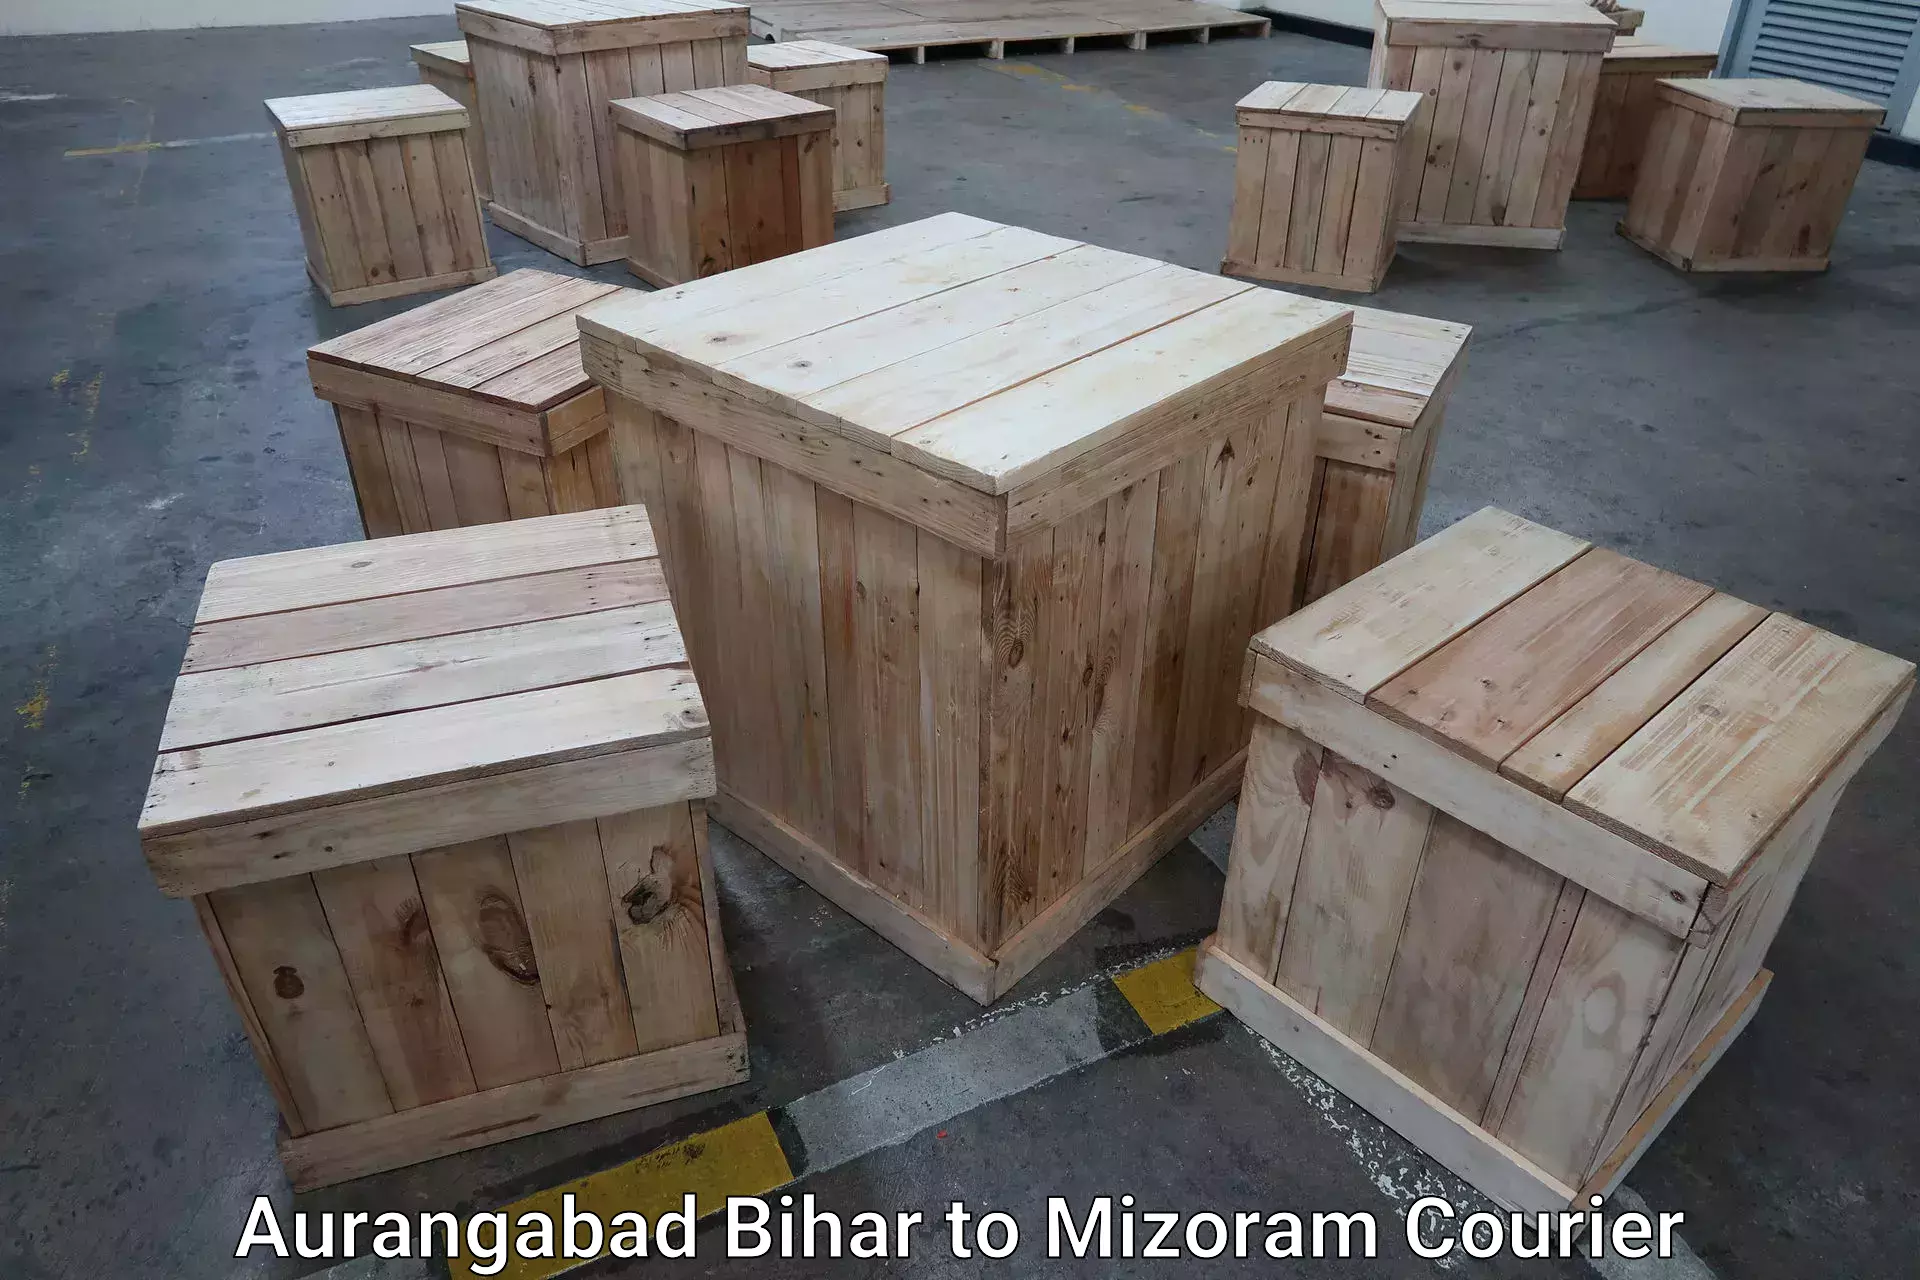 Baggage shipping schedule Aurangabad Bihar to Siaha